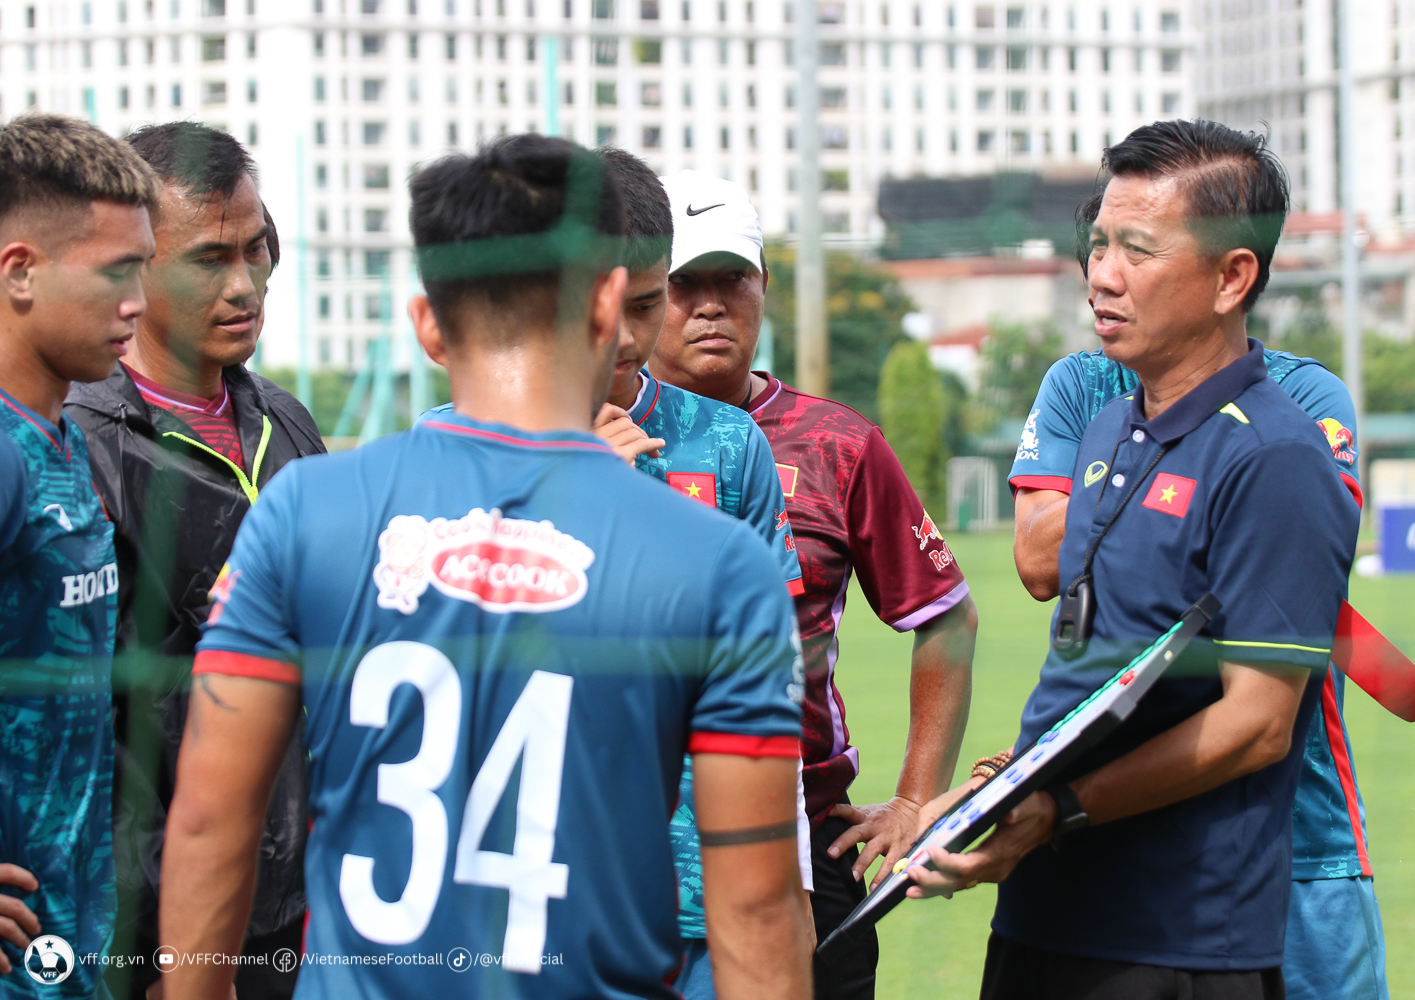 HLV Hoàng Anh Tuấn đang tập trung chuẩn bị cho đội tuyển U.23 Việt Nam